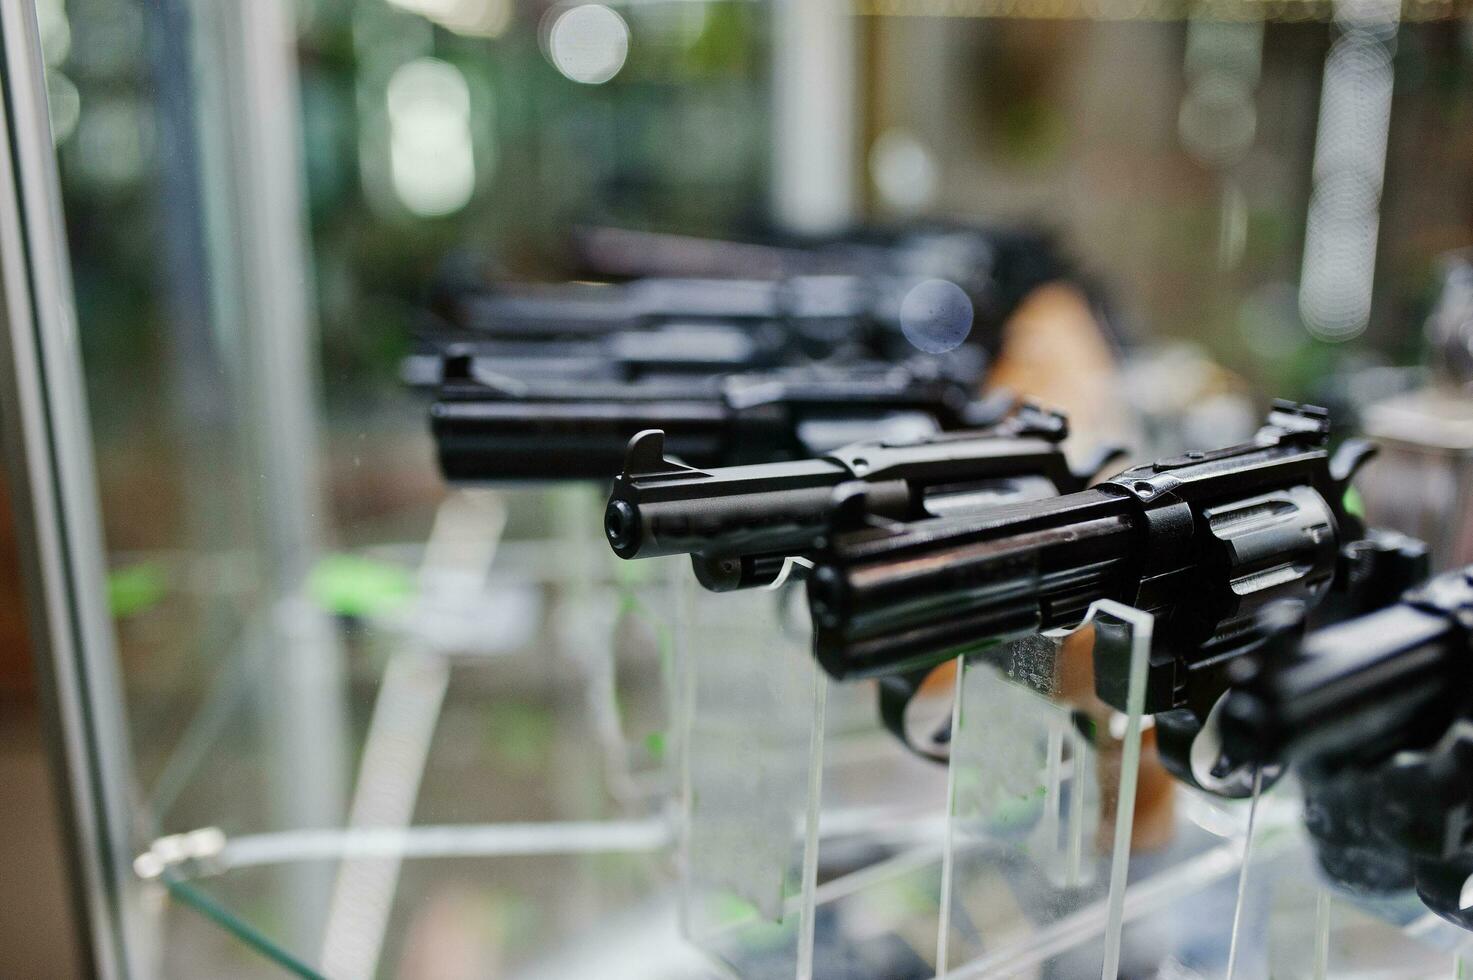 diferentes armas e revólveres nas prateleiras armazenam armas no centro da loja. foto